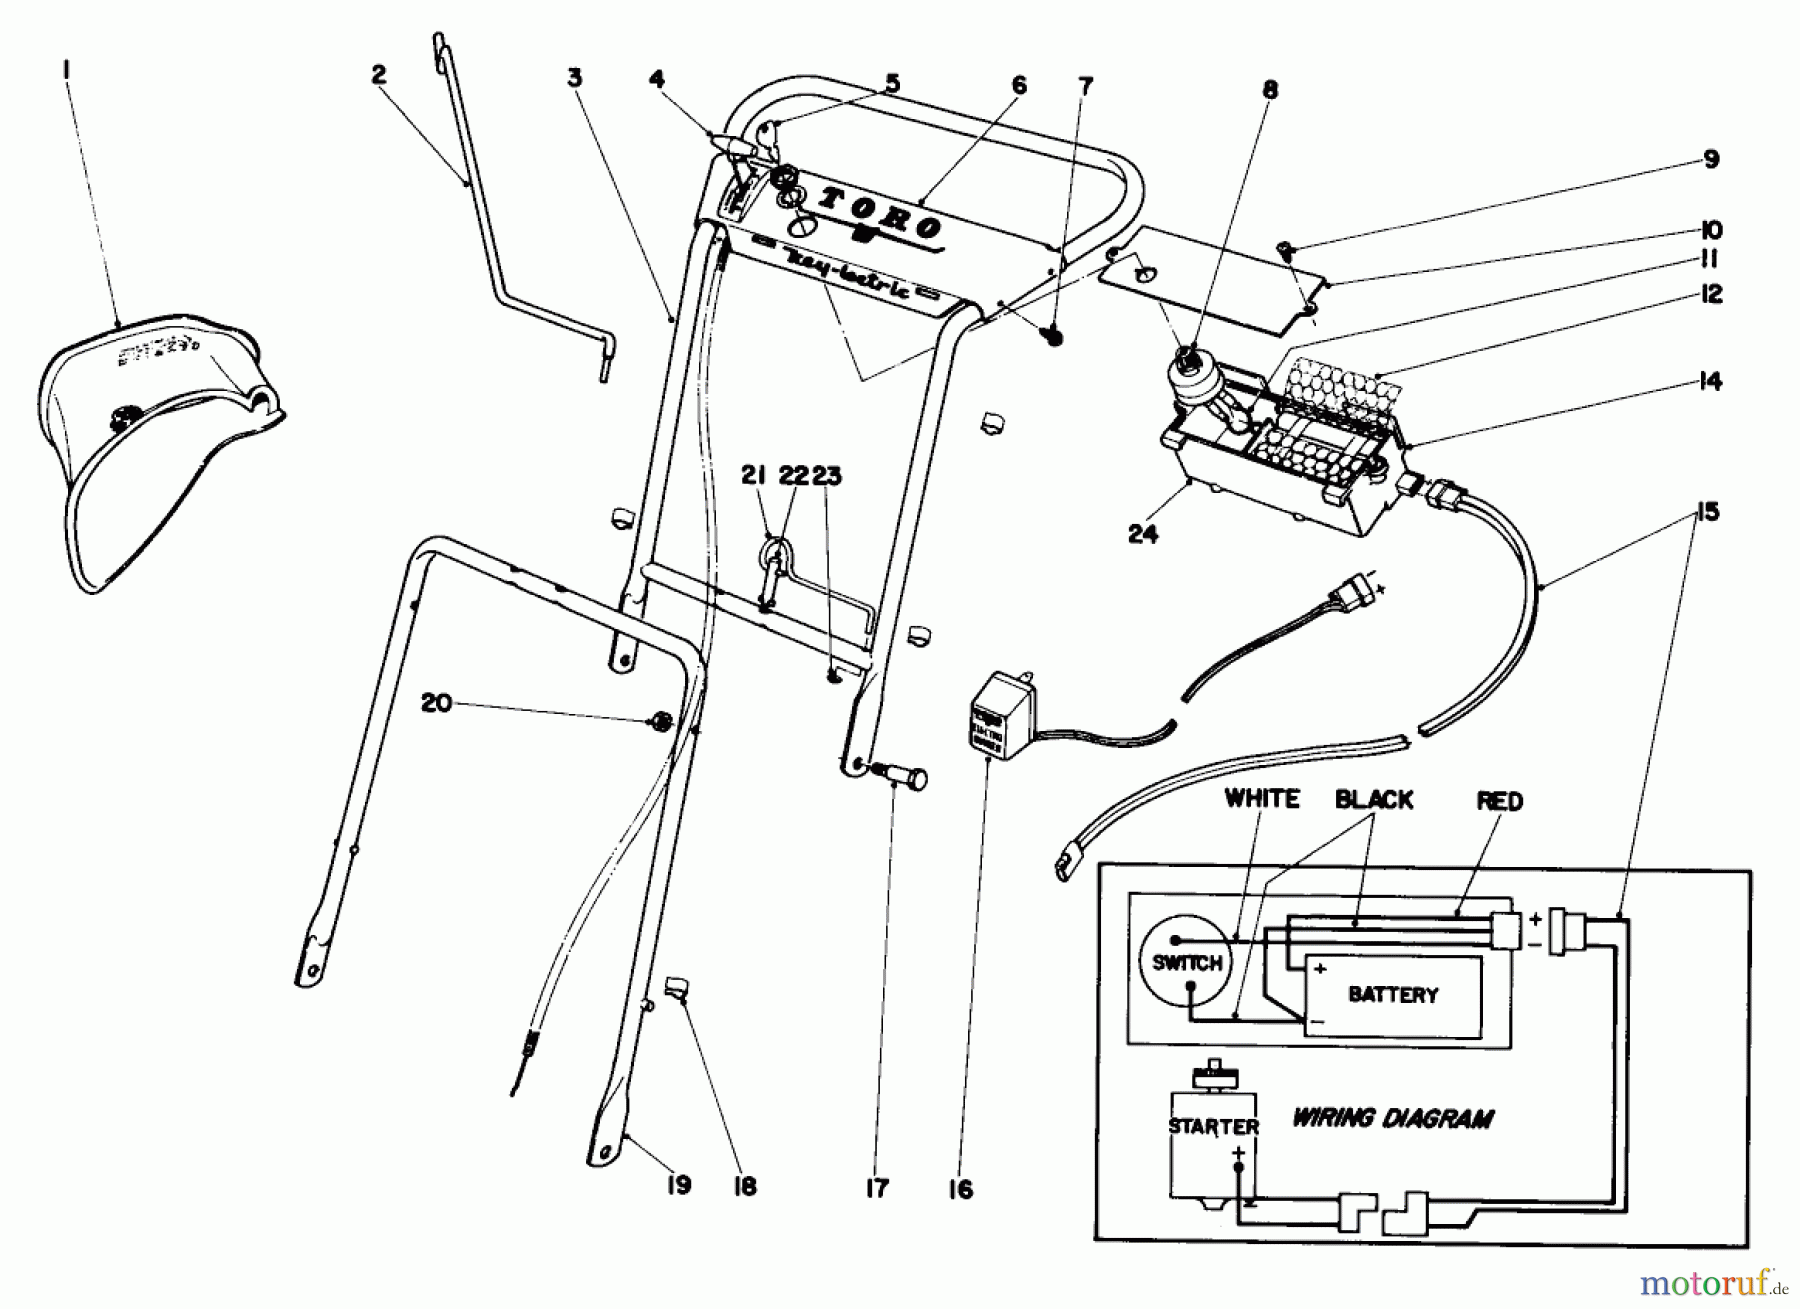  Toro Neu Mowers, Walk-Behind Seite 1 19250 - Toro Whirlwind Lawnmower, 1969 (9000001-9999999) HANDLE ASSEMBLY